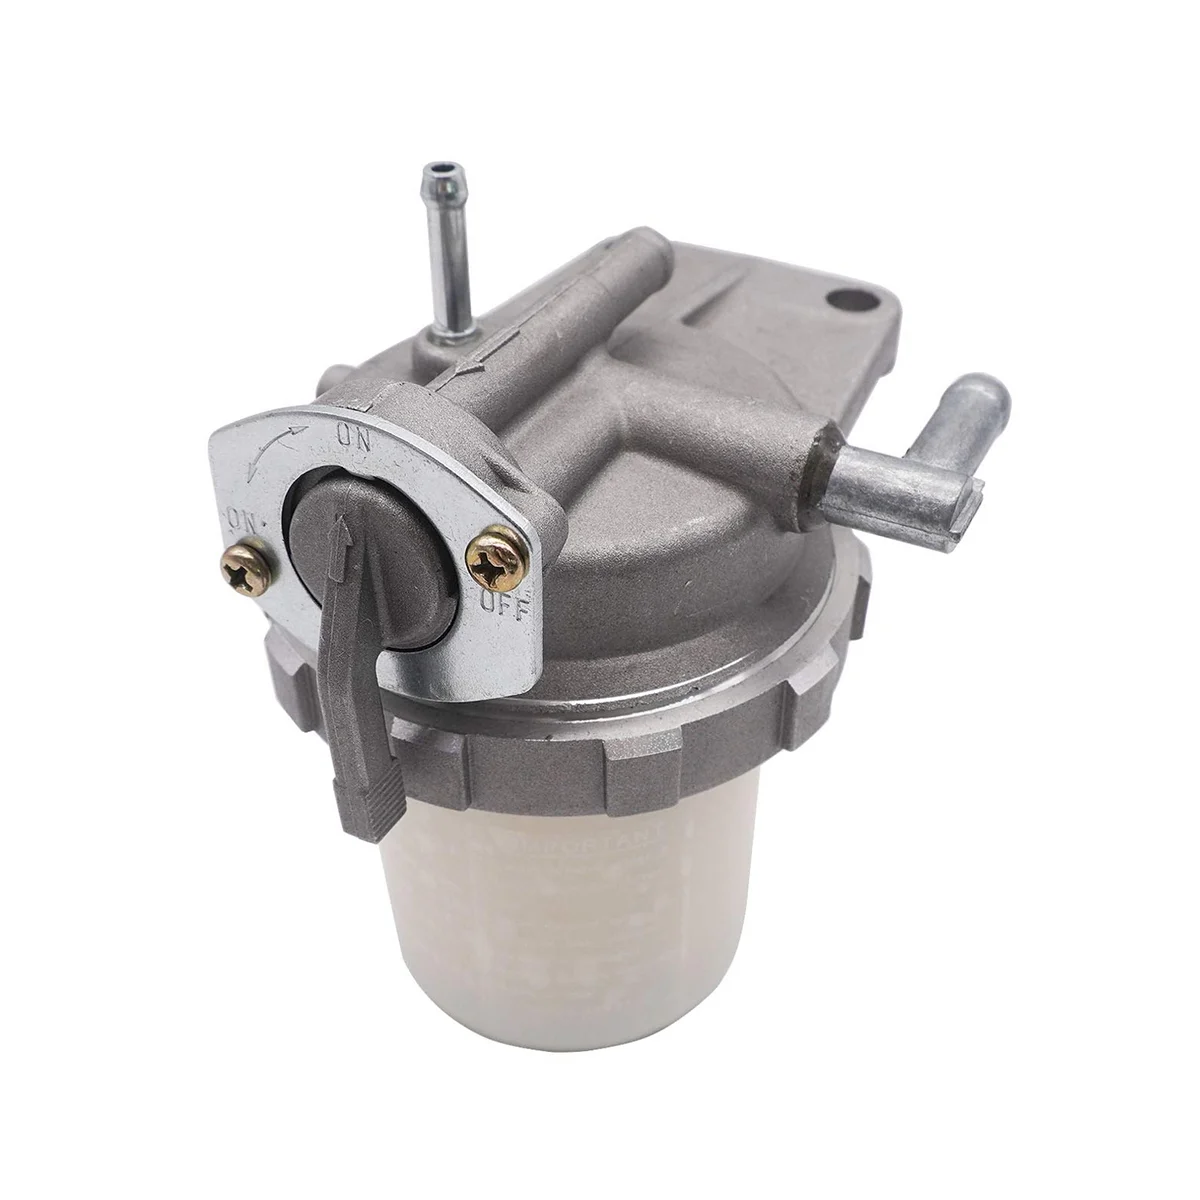 

Diesel Filter Fuel Filter Assembly 15521-43015 1A001-43010 for Kubota Engine D1005 D1105 D1703 D905